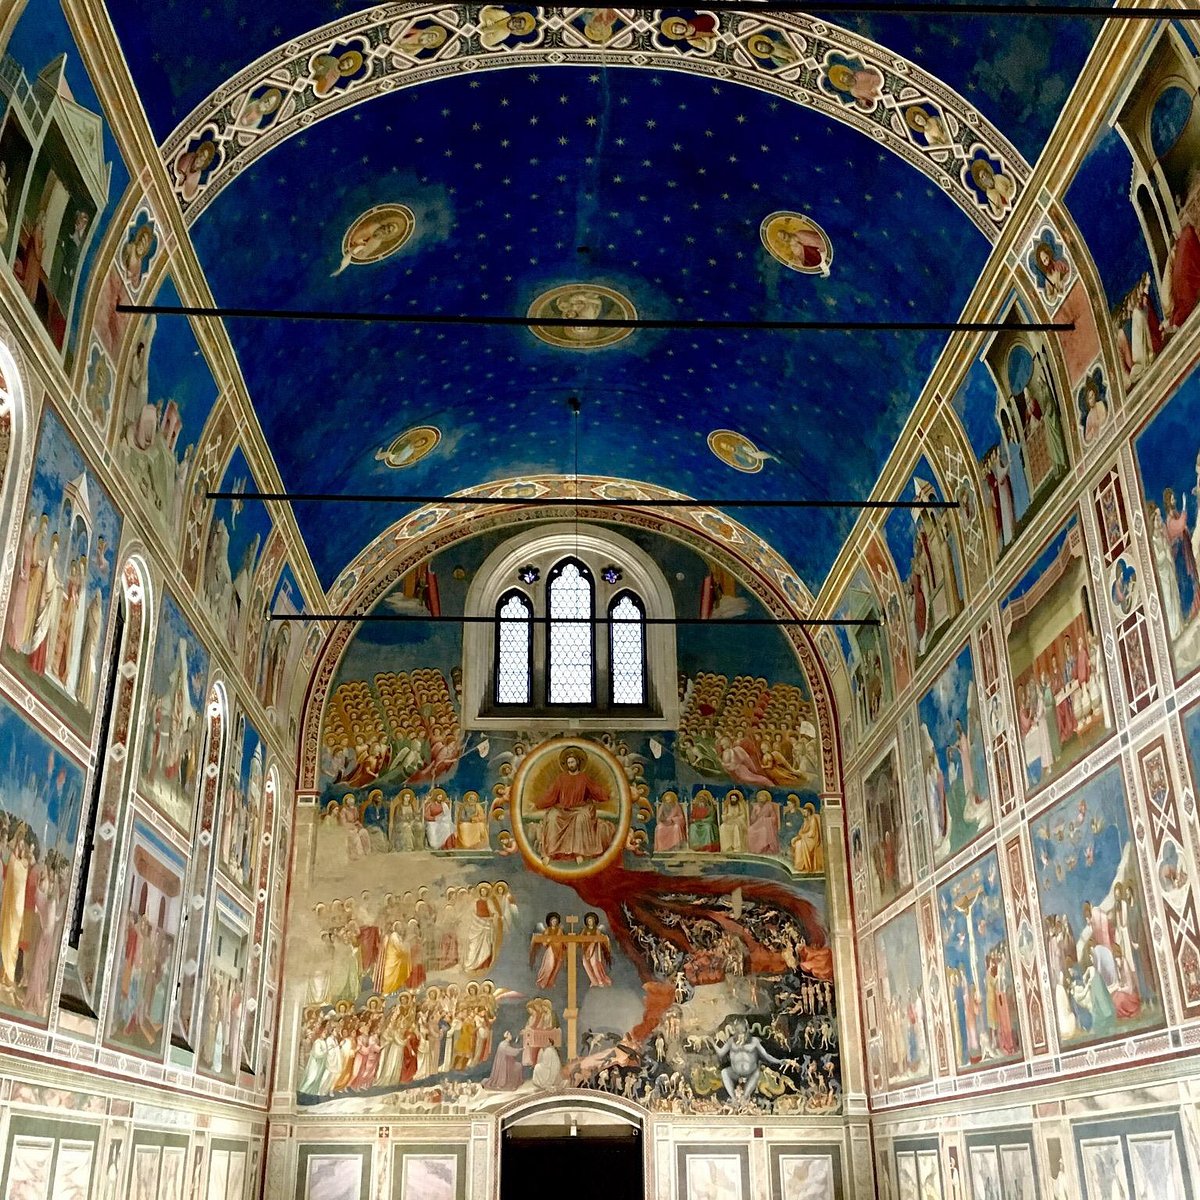 The Blues: Seeing Stars at Giotto's Cappella degli Scrovegni - Issimo